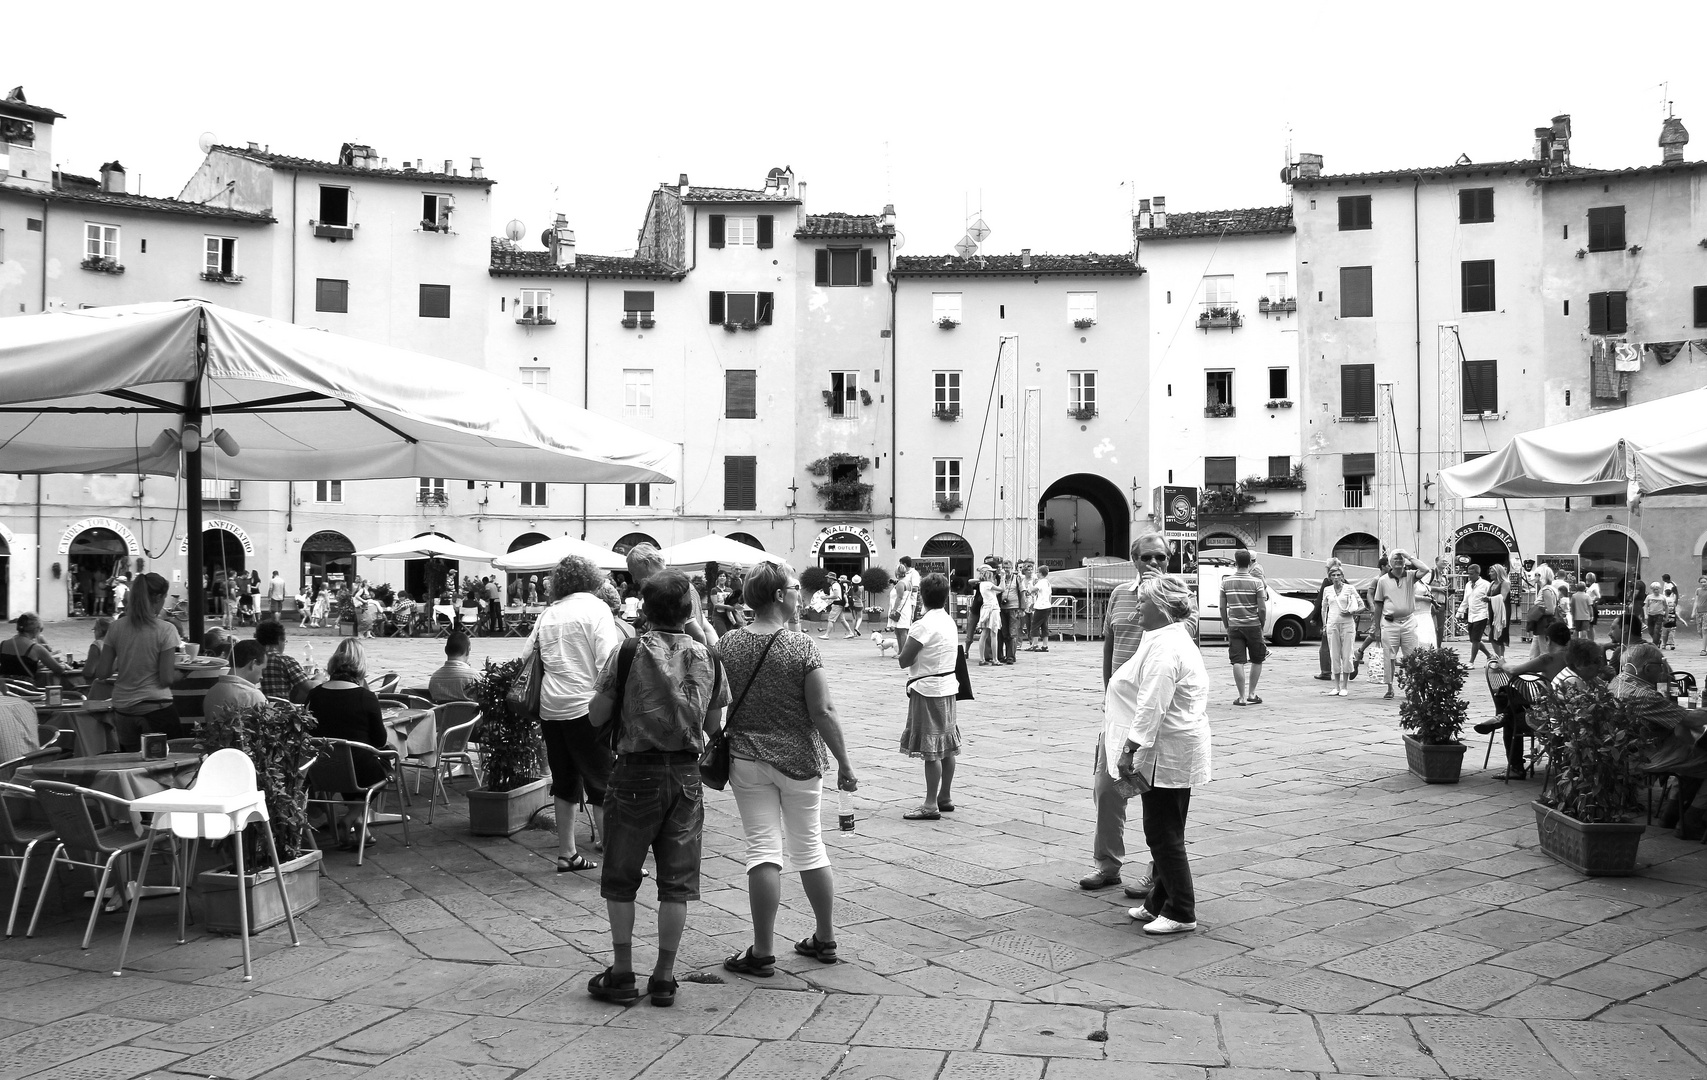 Lucca: Piazza dell'anfiteatro"2